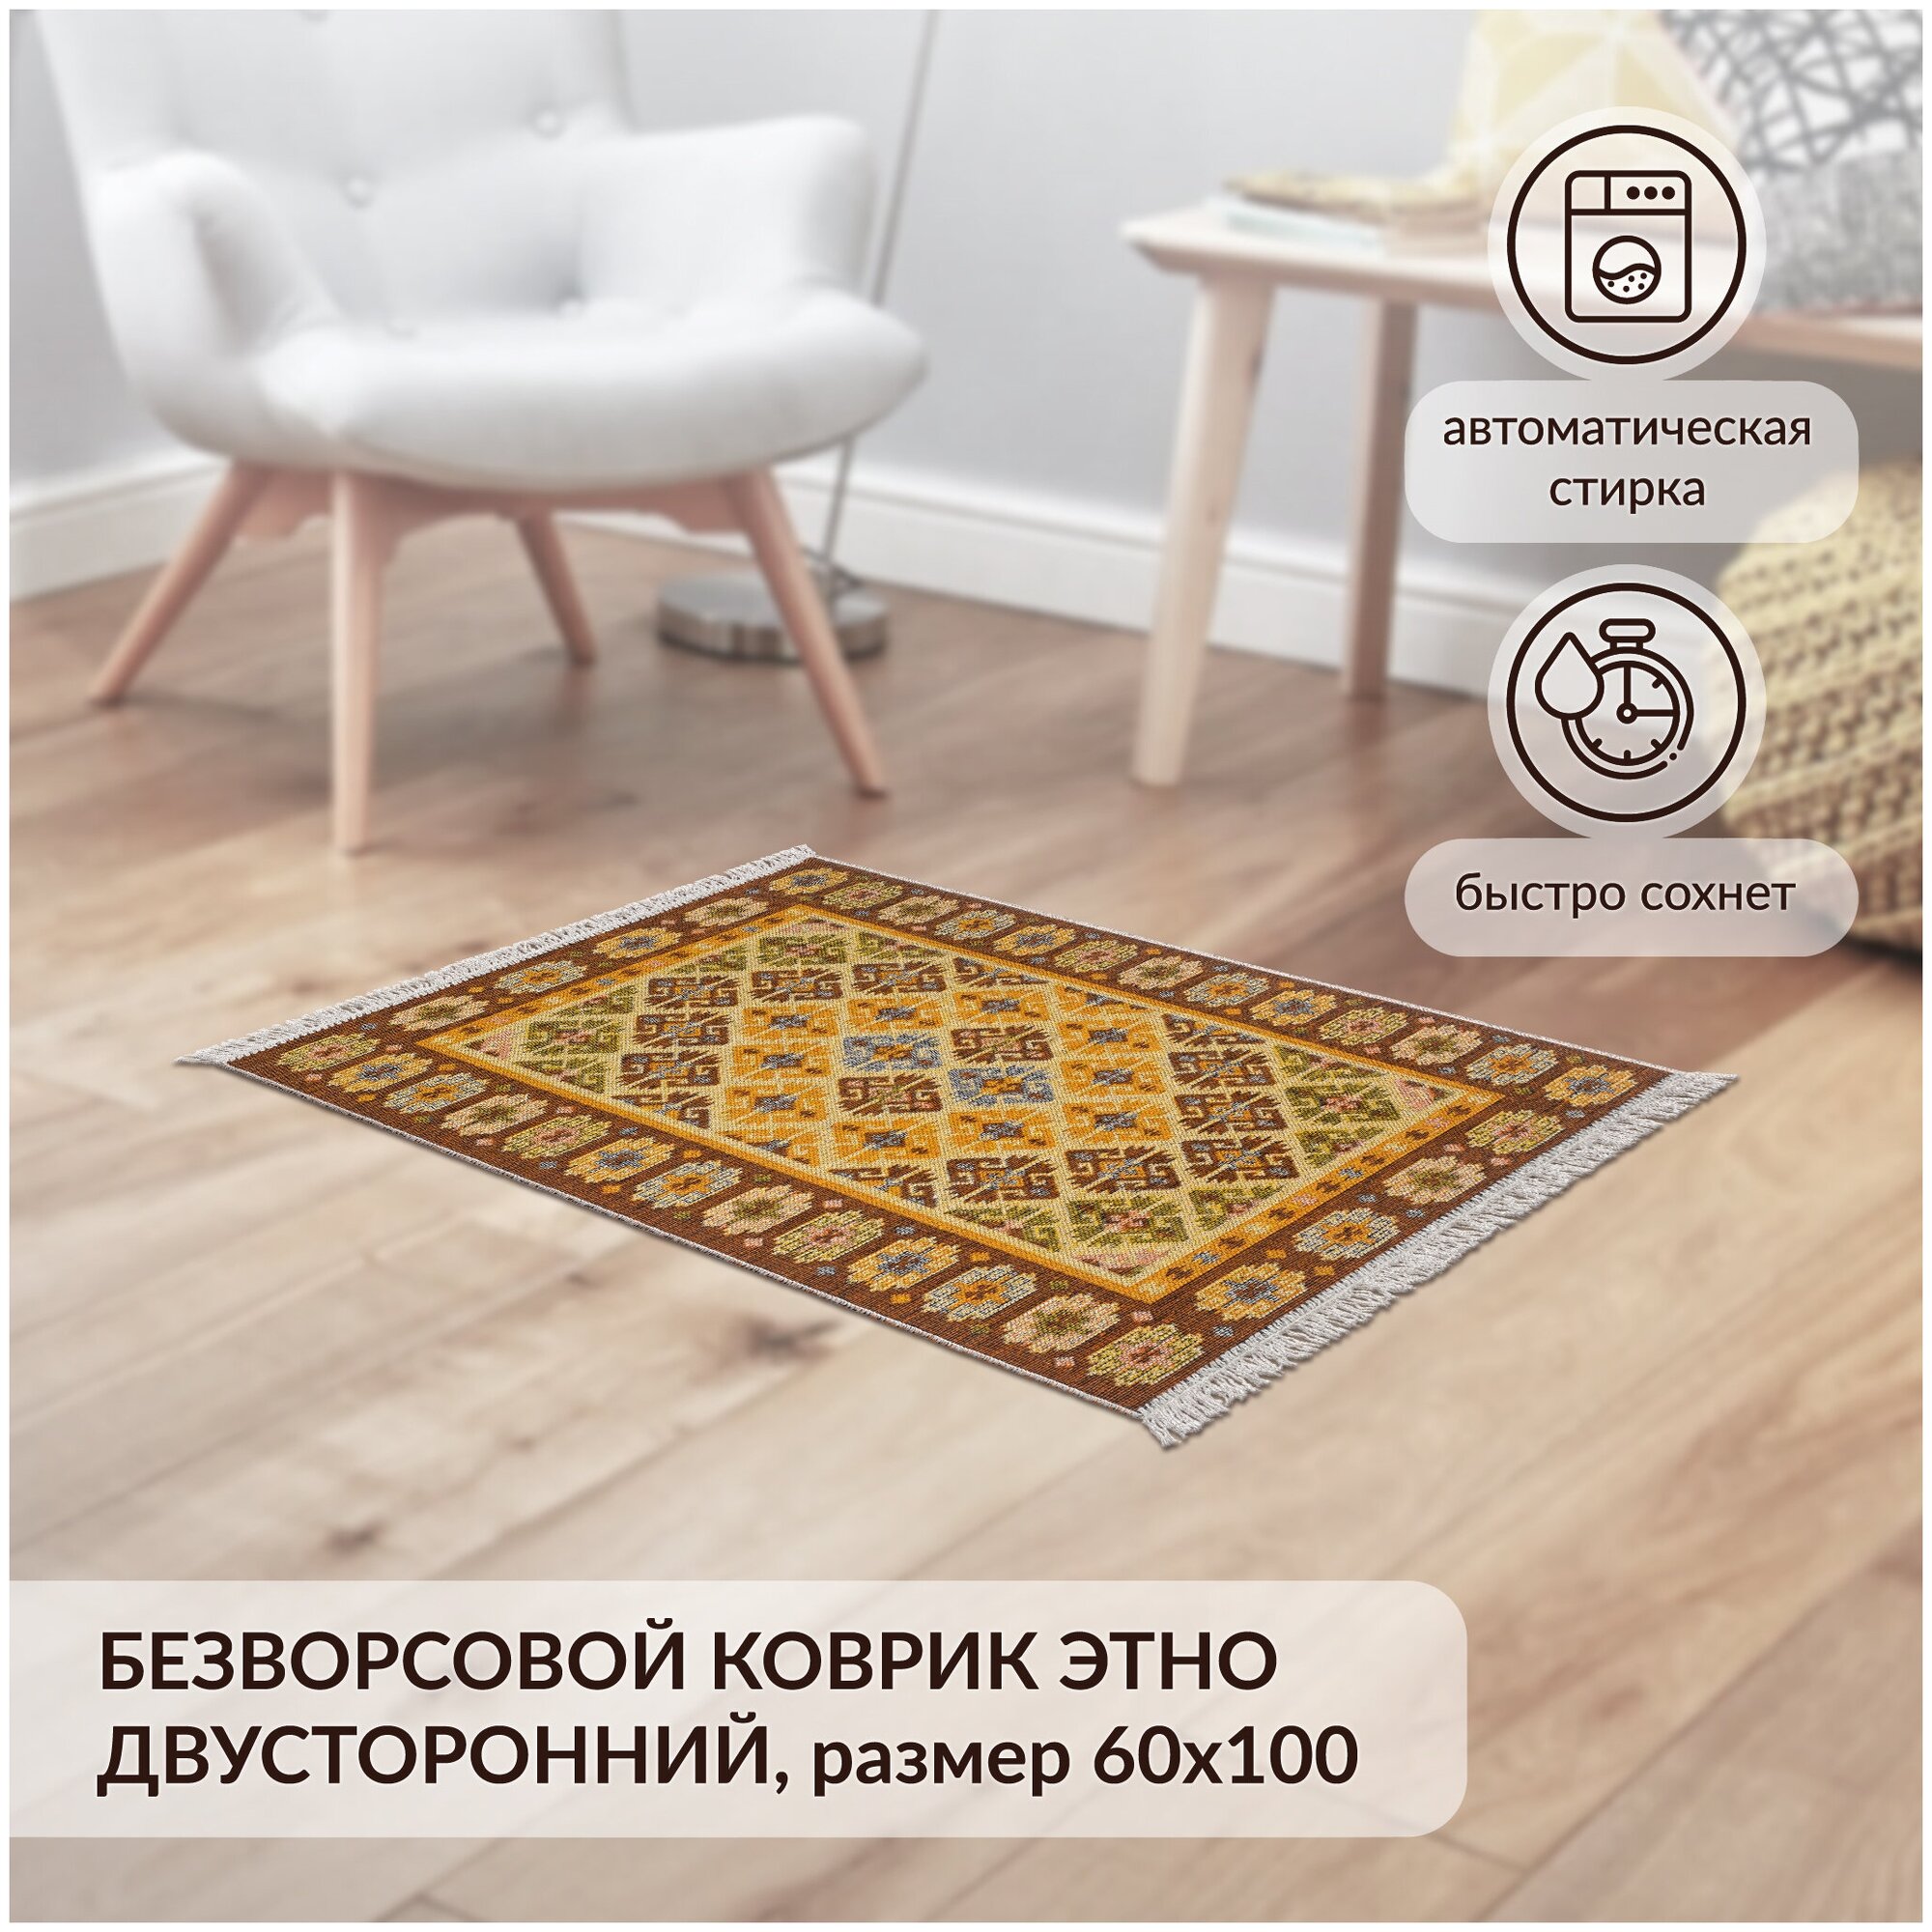 Коврик комнатный хлопковый, безворсовый Icarpet Этно 60х100 янтарь(002)